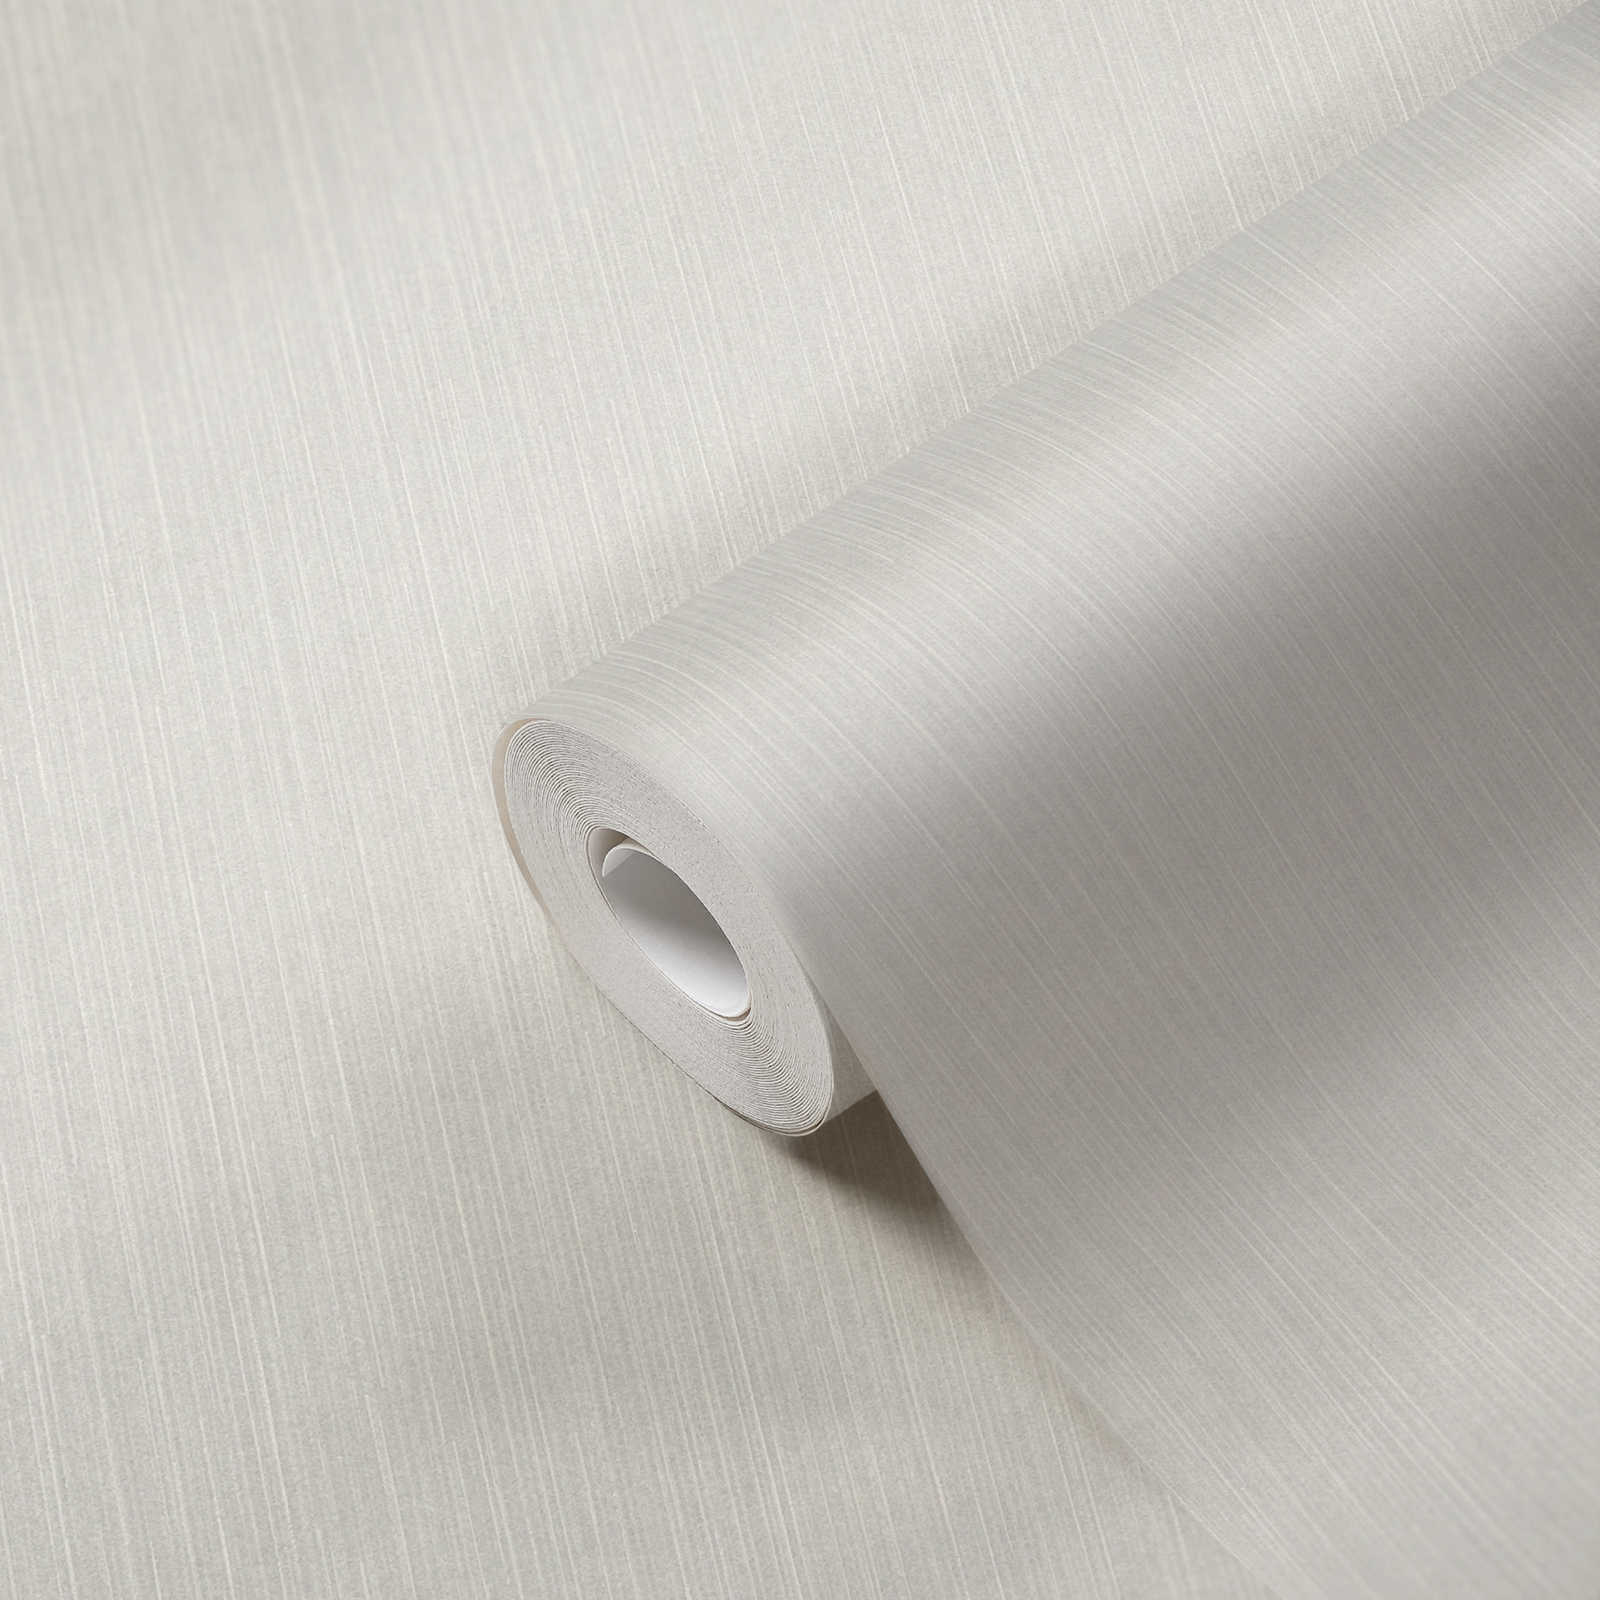             Wit vliesbehang met glittereffect & lijnmotief - wit, grijs
        